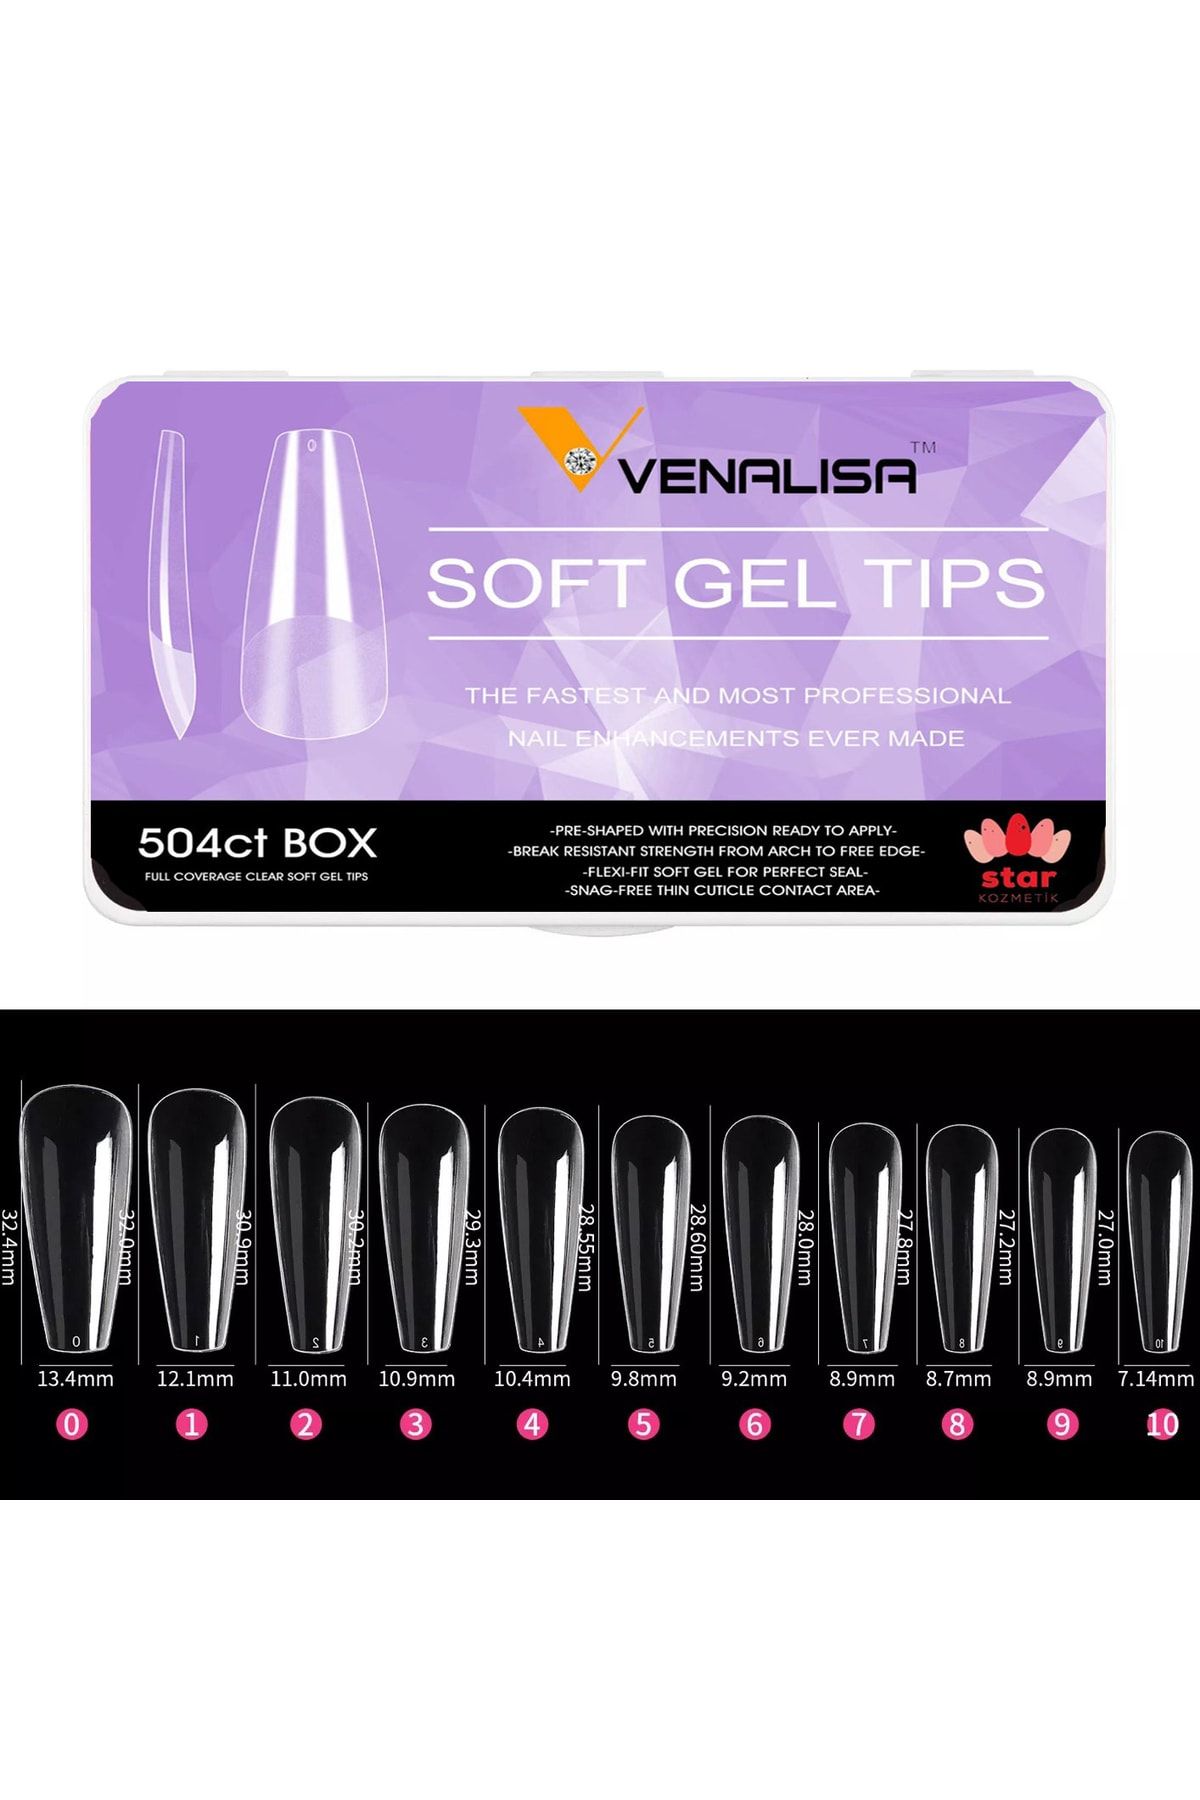 Venalisa Soft Gel Tips Yeni Nesil Protez Tırnak Jel Tips 504 Adet Komple Mat